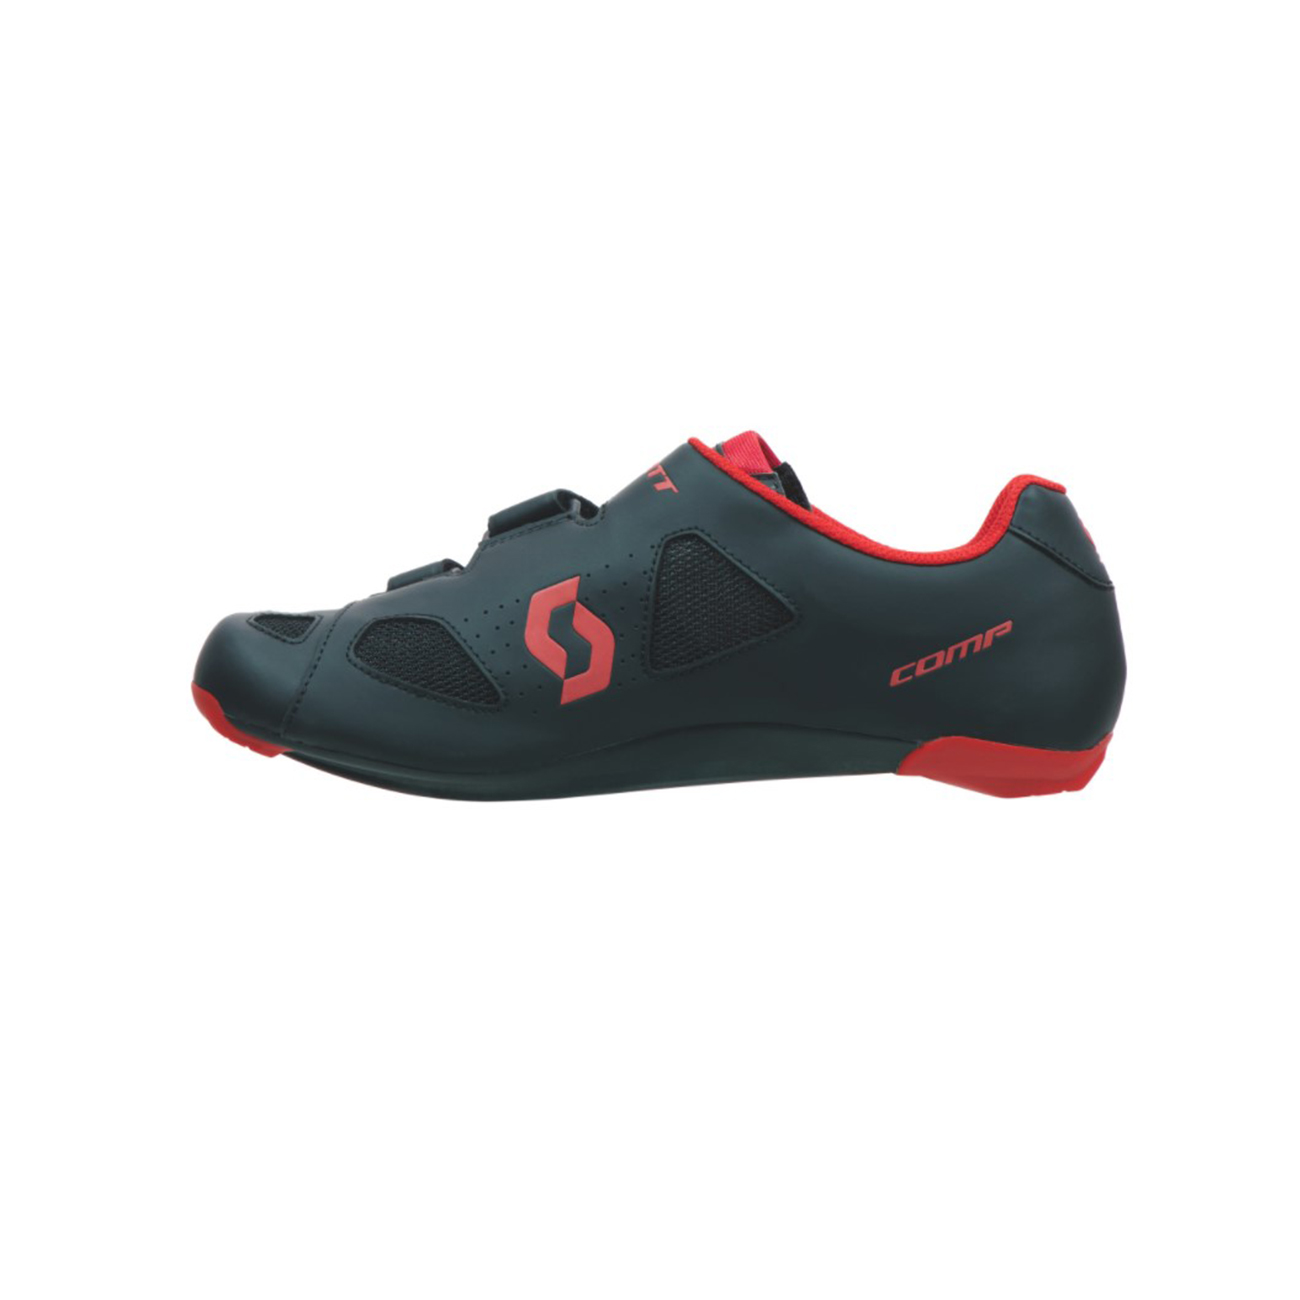 SCOTT Kerékpáros Cipő - ROAD COMP - Piros/fekete